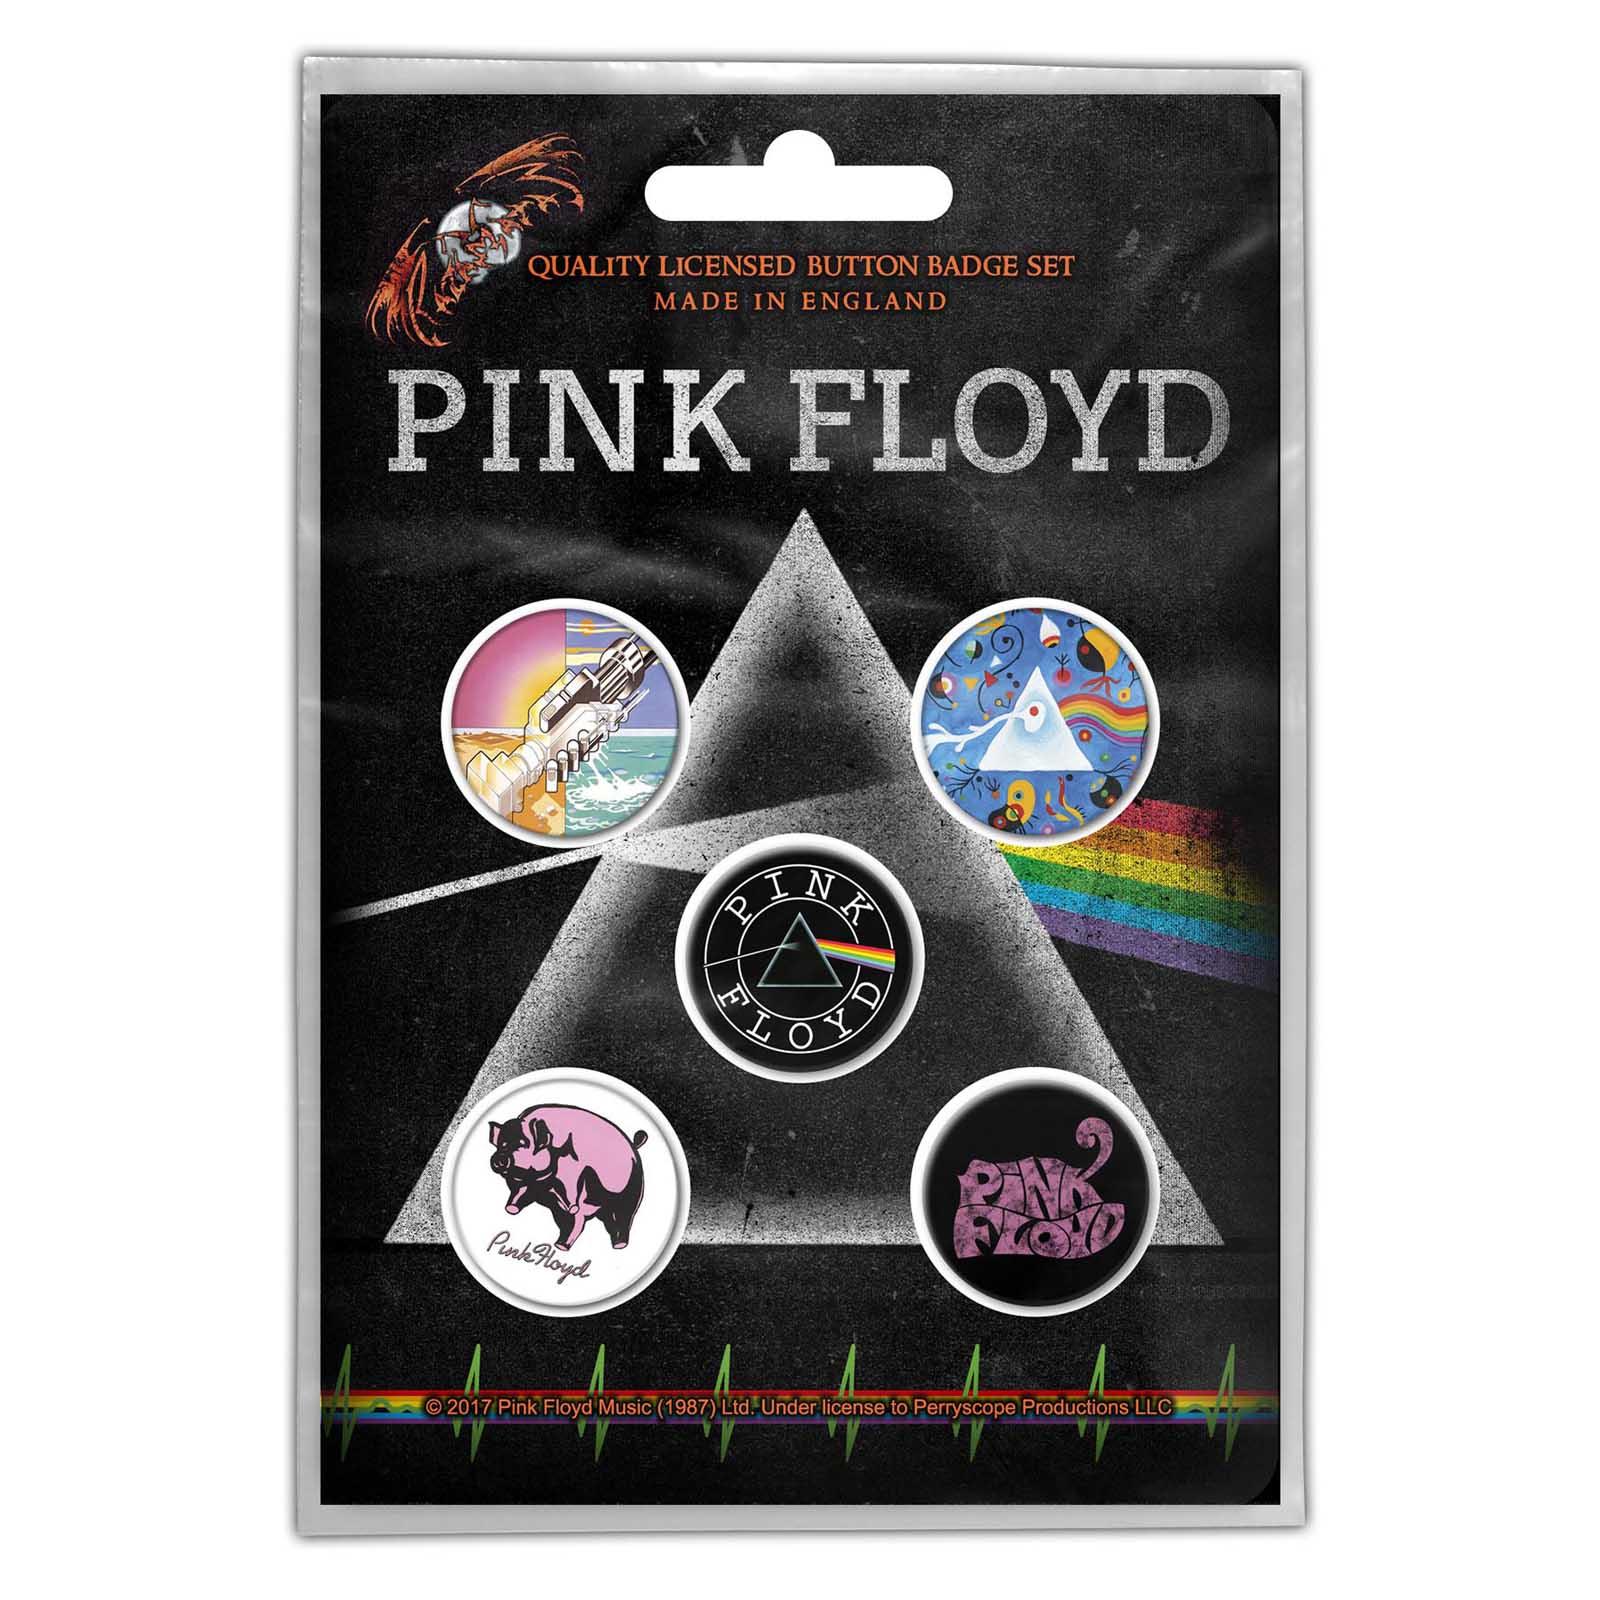 (ピンク・フロイド) Pink Floyd オフィシャル商品 Prism バッジ セット (5個組) 【海外通販】